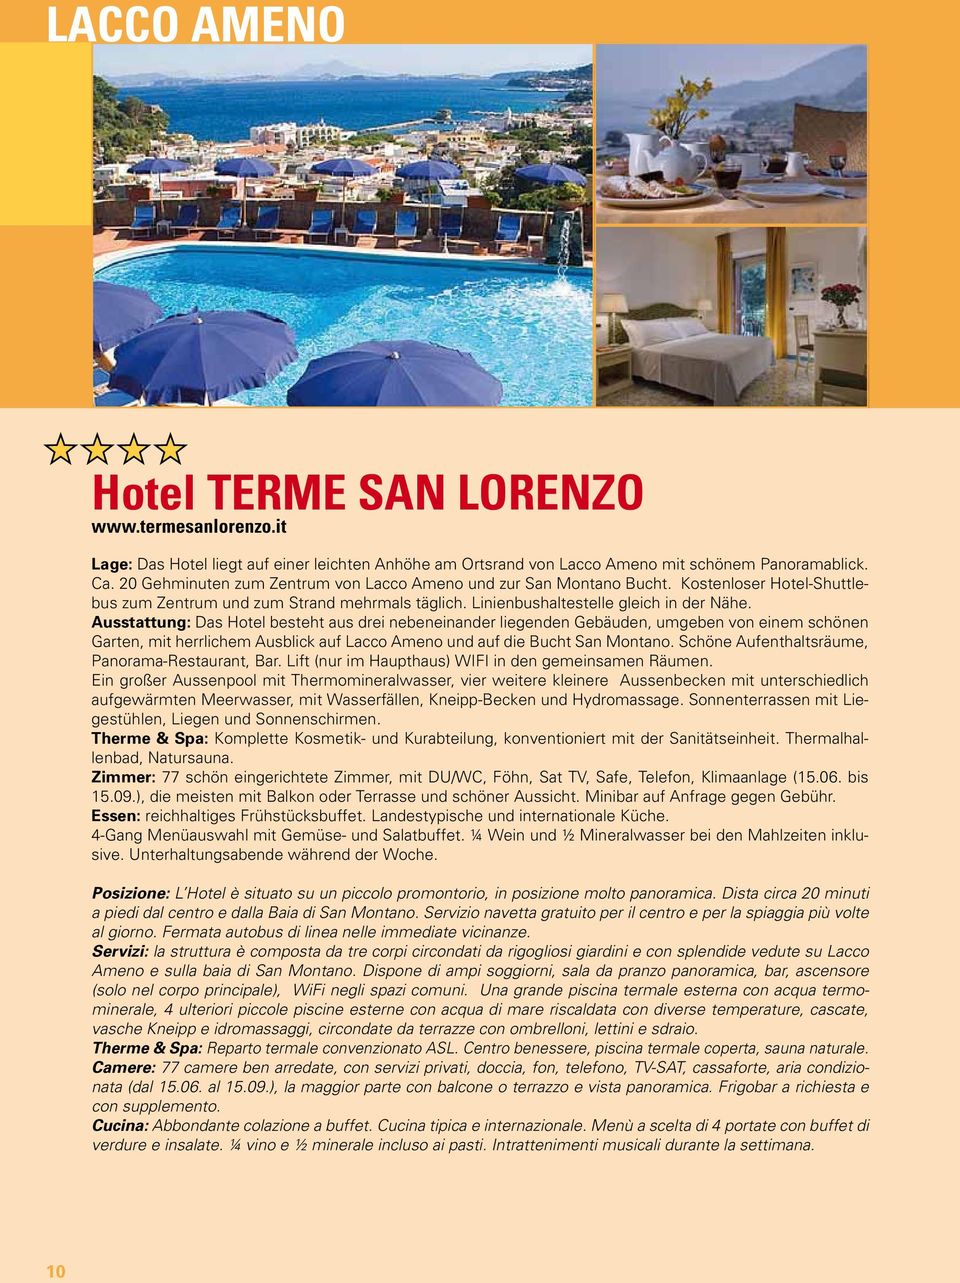 Ausstattung: Das Hotel besteht aus drei nebeneinander liegenden Gebäuden, umgeben von einem schönen Garten, mit herrlichem Ausblick auf Lacco Ameno und auf die Bucht San Montano.